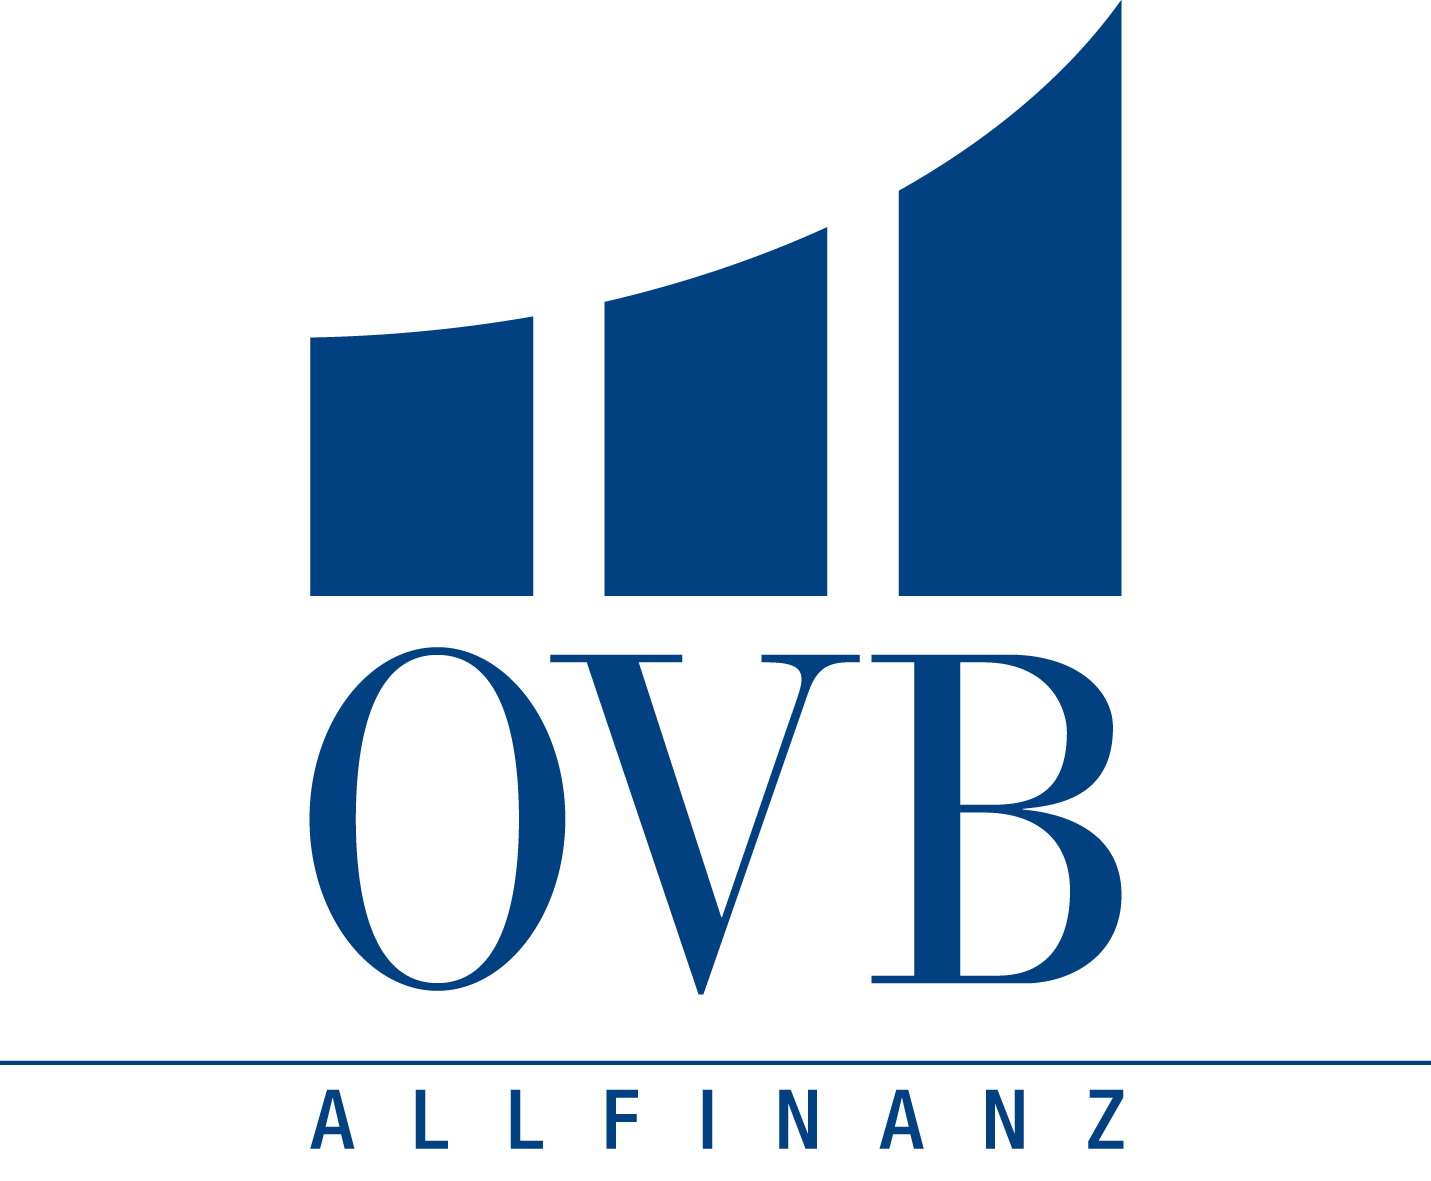 Ovb Logo